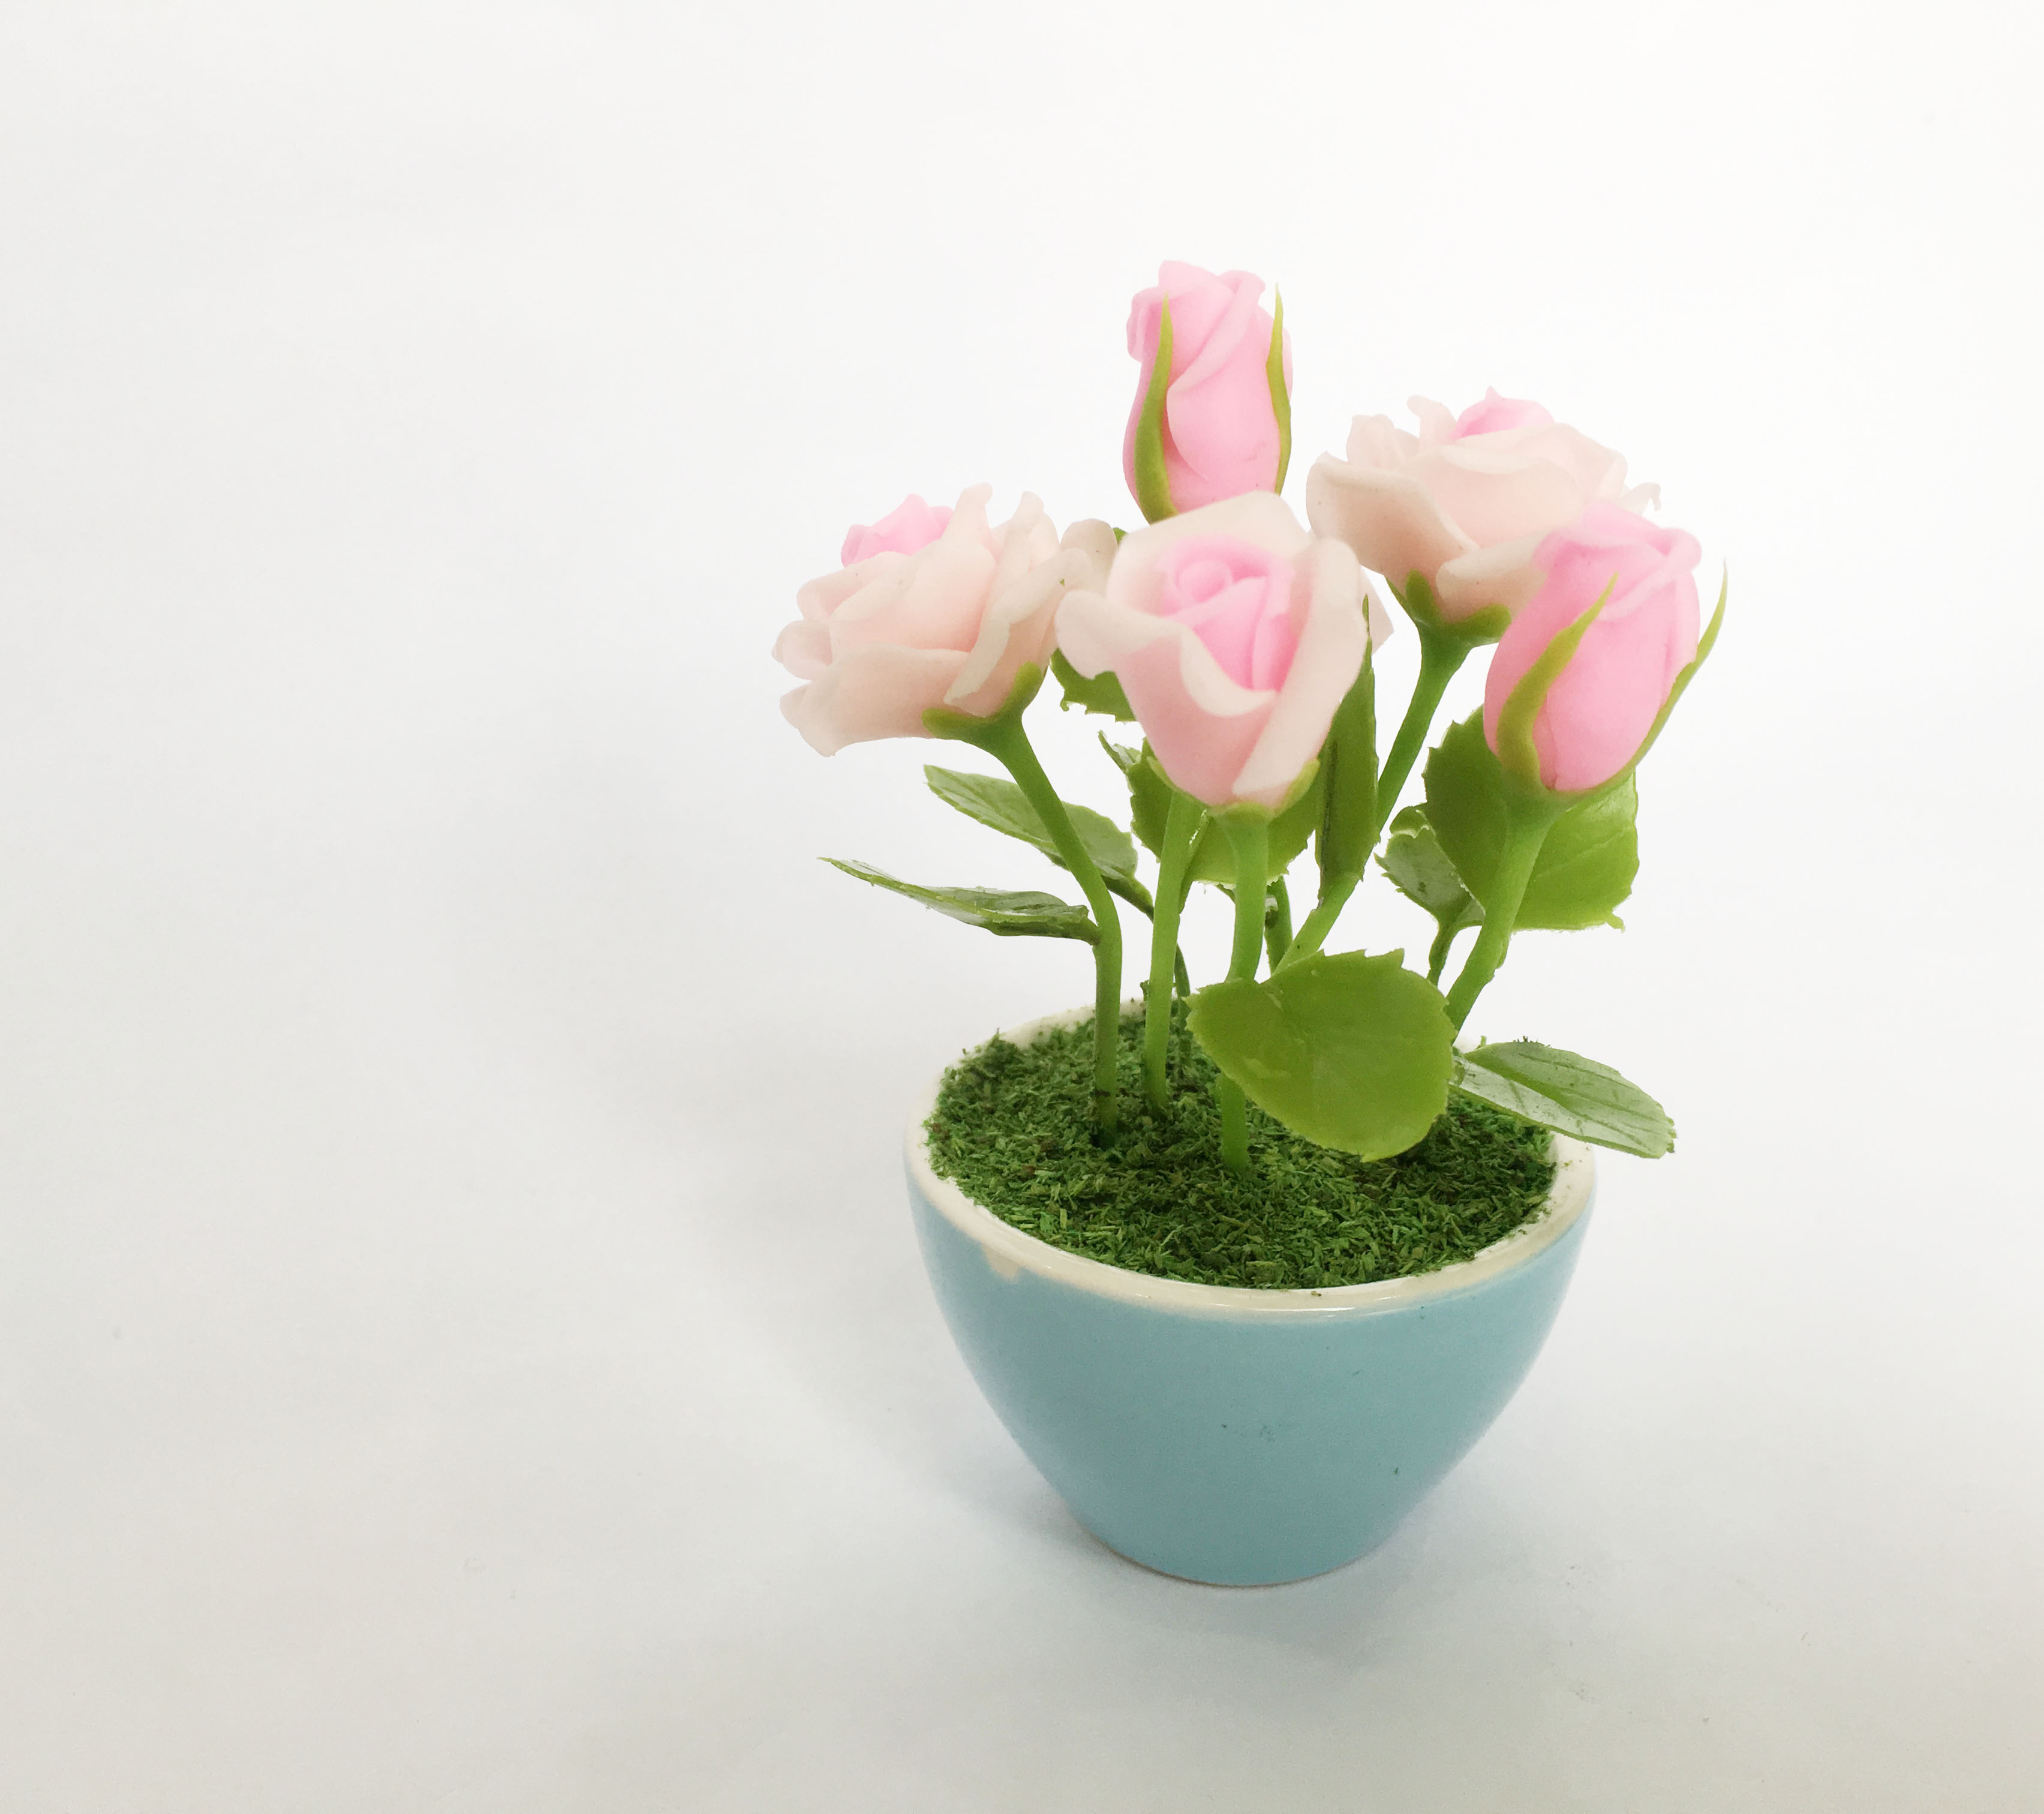 Chậu hoa đất sét mini - Bụi hoa hồng trong cốc sứ (phát màu ngẫu nhiên) - Quà tặng trang trí handmade